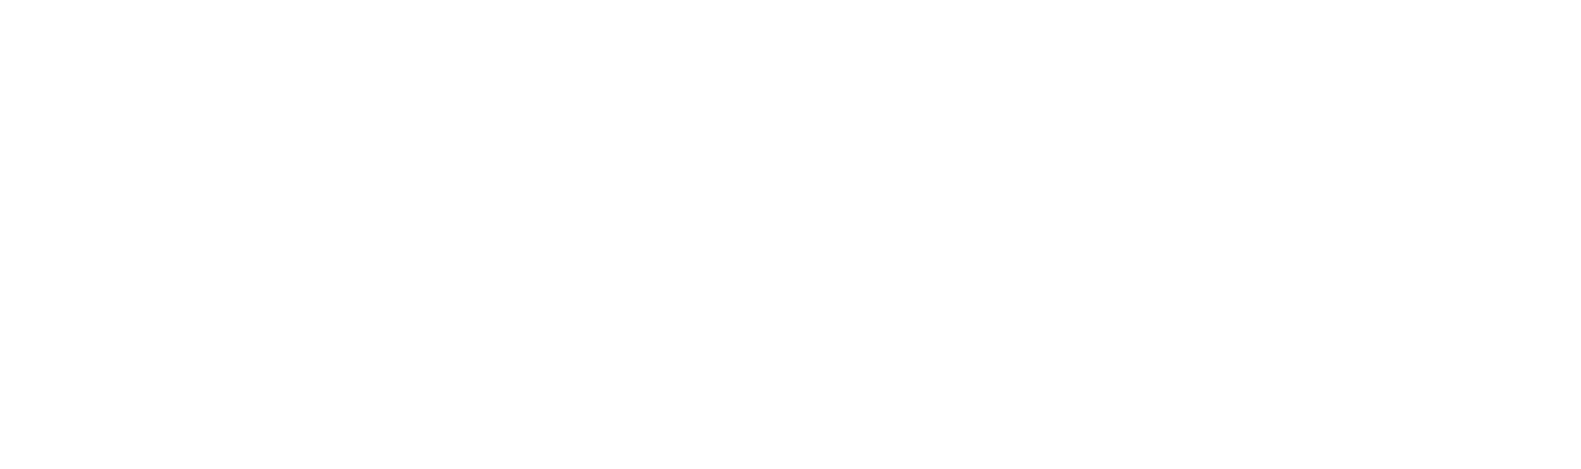 Klaviyo Logo groß für dunkle Hintergründe (transparentes PNG)